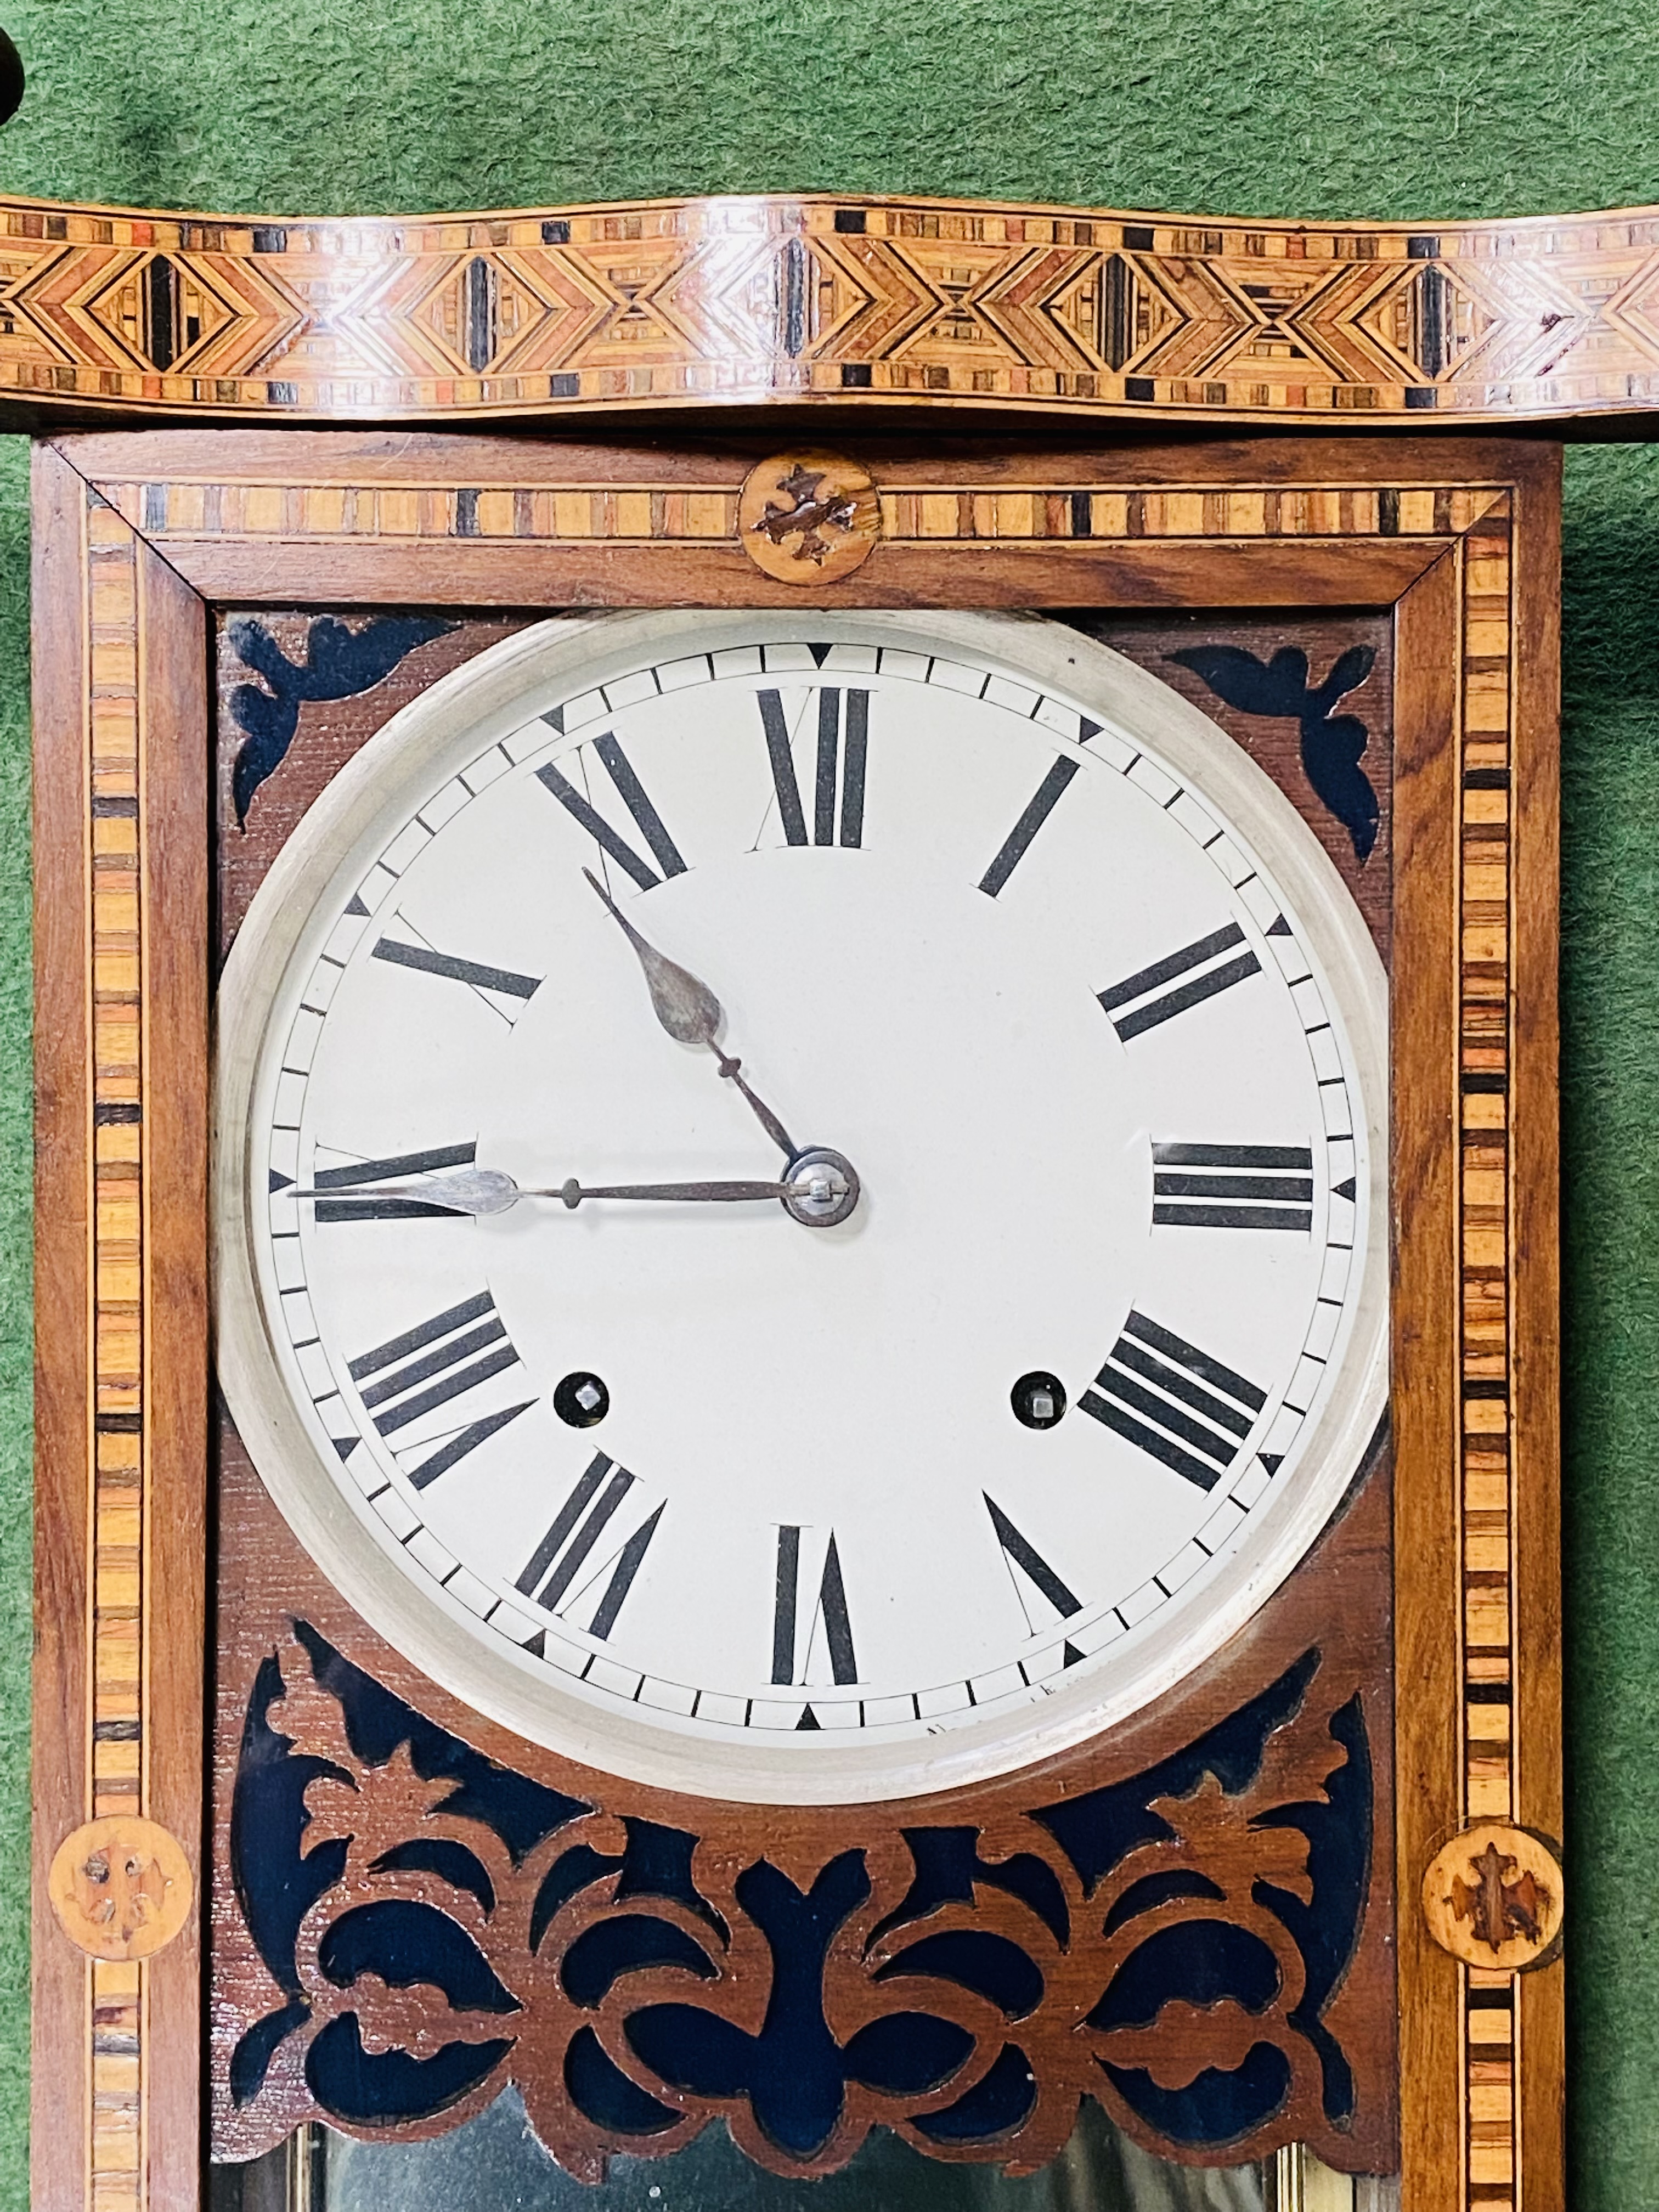 Mahogany Vienna style wall clock - Image 2 of 4